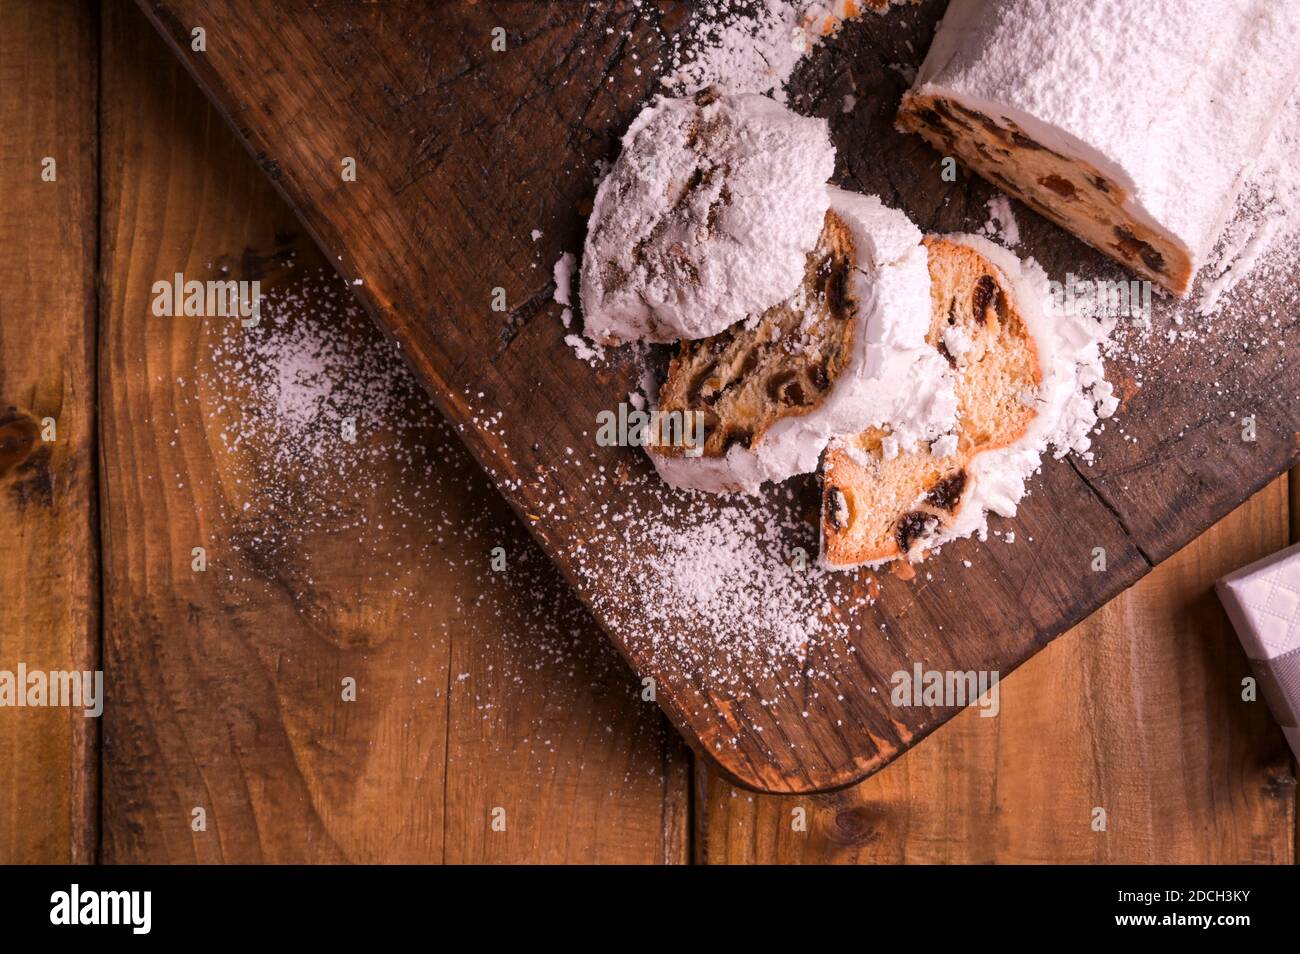 Stallone su sfondo di legno. Tradizionale pane dolce tedesco con frutta secca e marzapane per Natale. Vista dall'alto. Spazio di copia. Foto di alta qualità Foto Stock